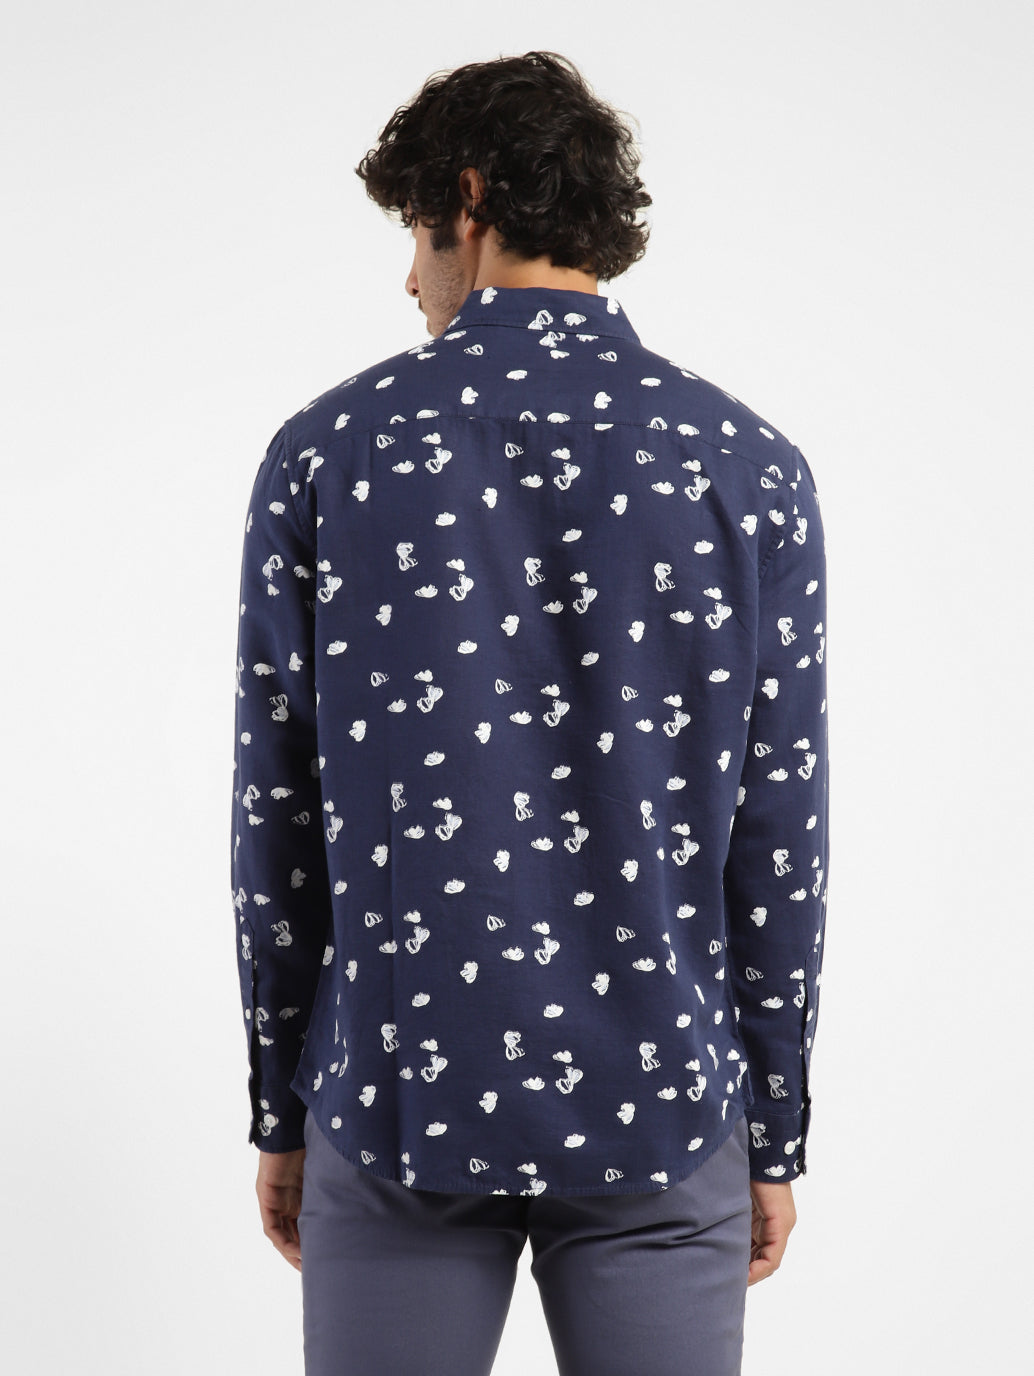 Men's Abstract Print Spread Collar Shirt